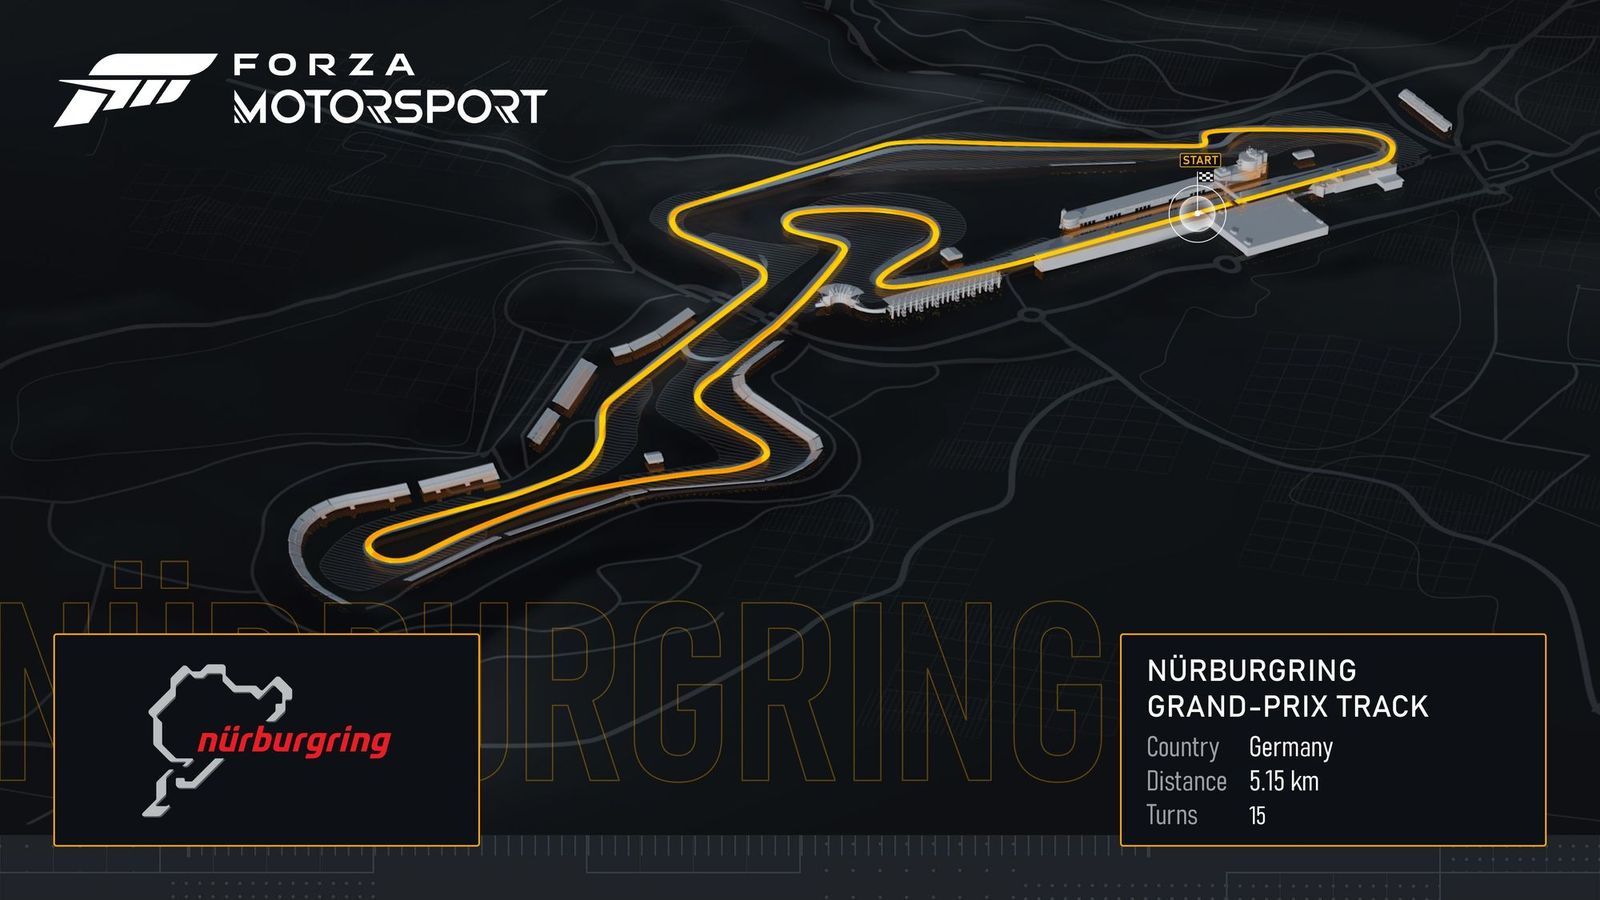 Forza Motorsport Nurburgring Grand Prix